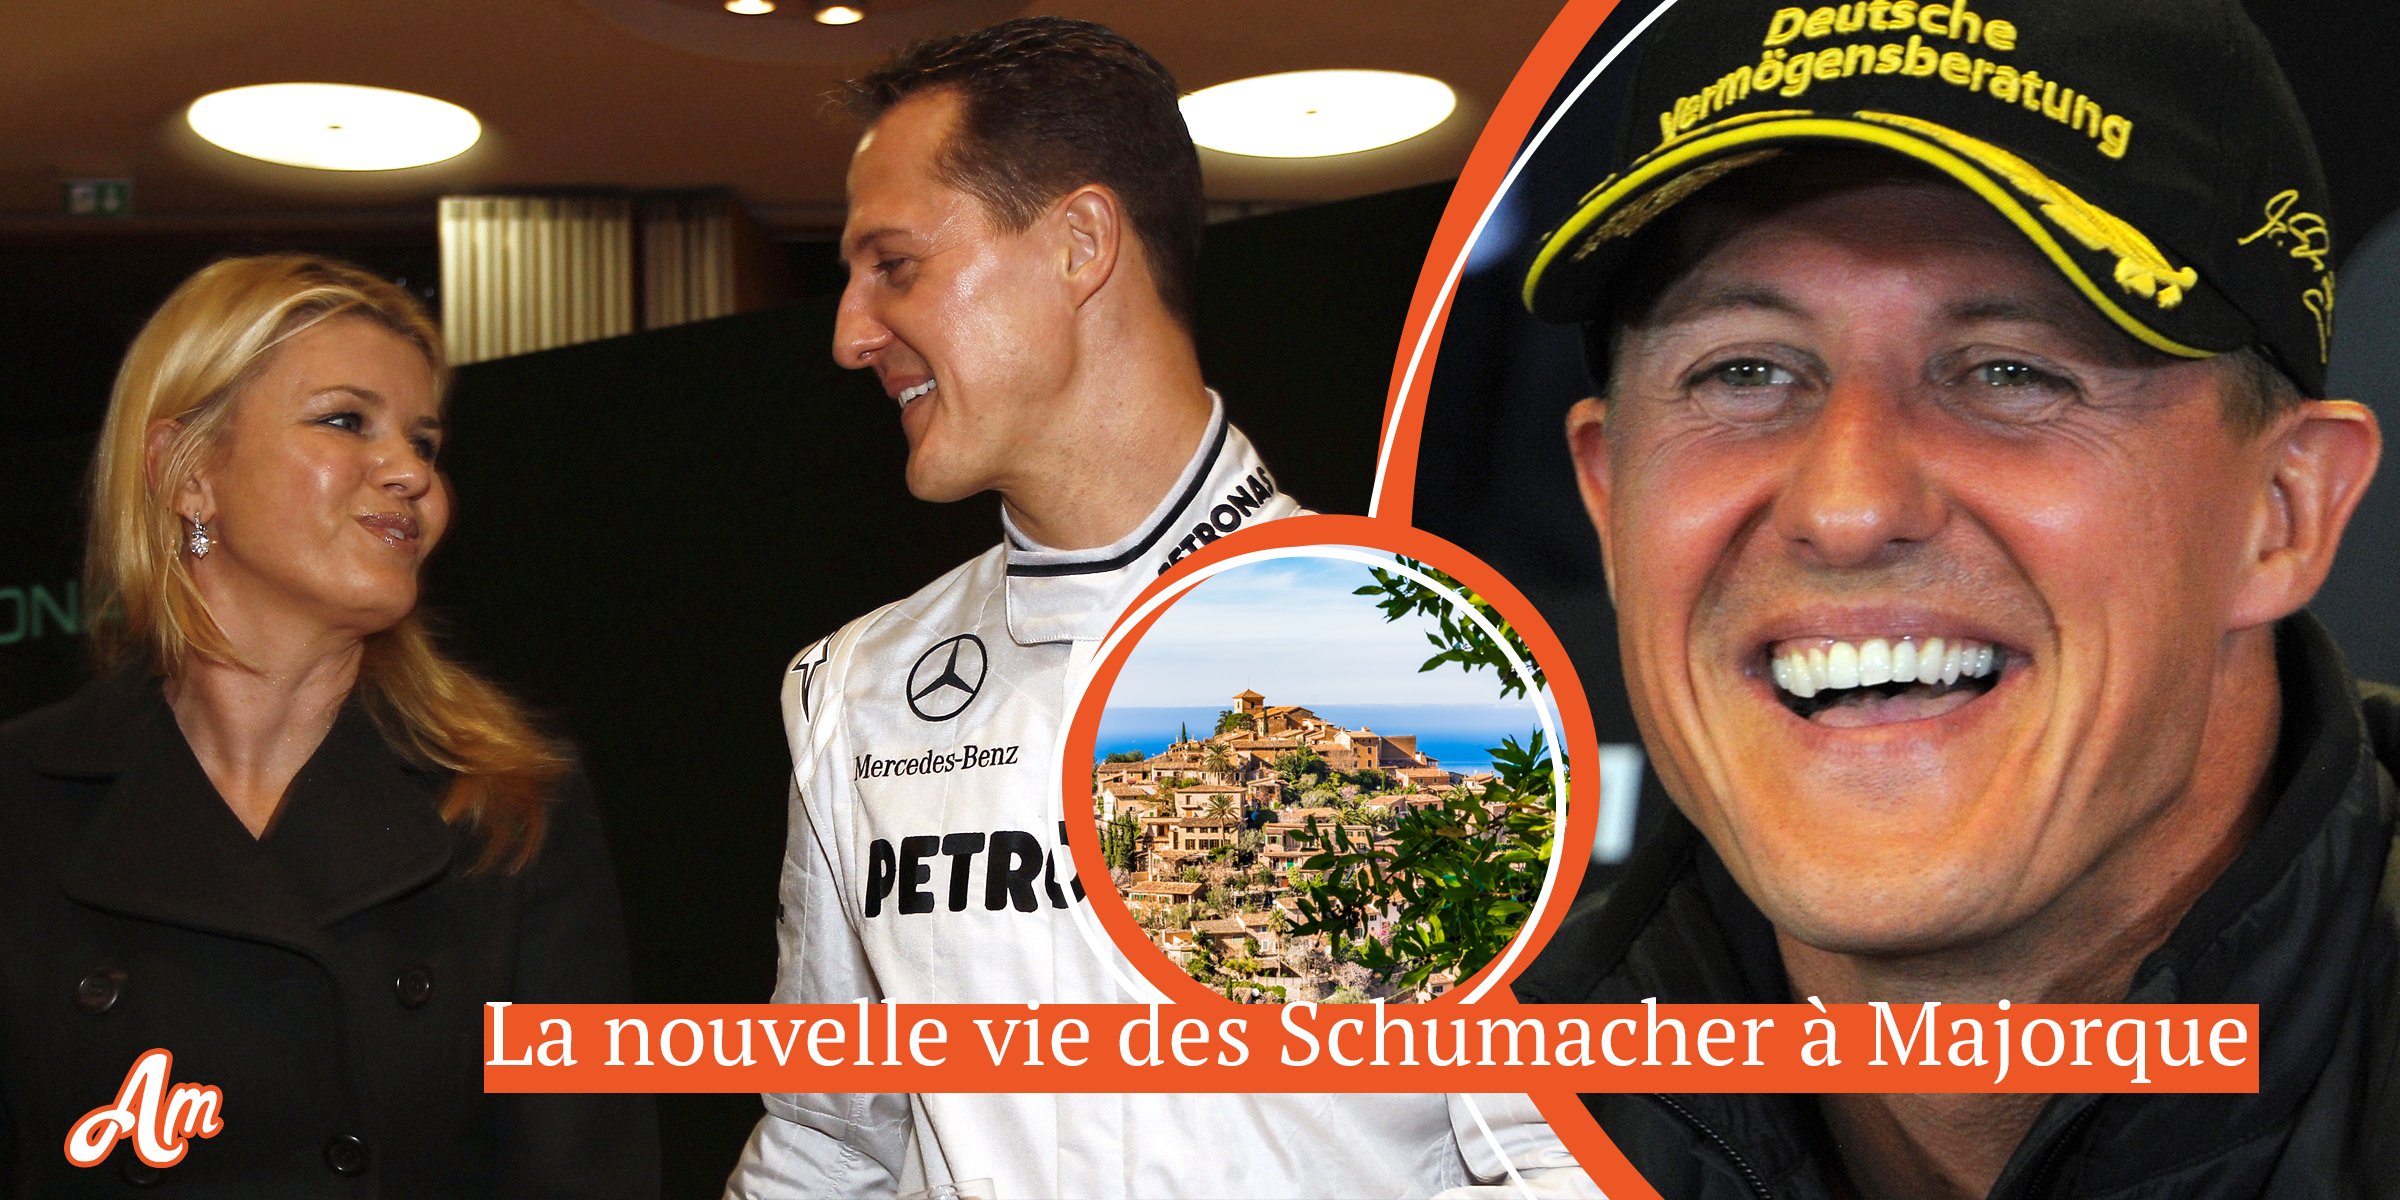 Michael Schumacher aurait été transporté à Majorque : “nouvelle vie” pour le coureur et sa famille avec “jet ski, chevaux et amis de la F1”